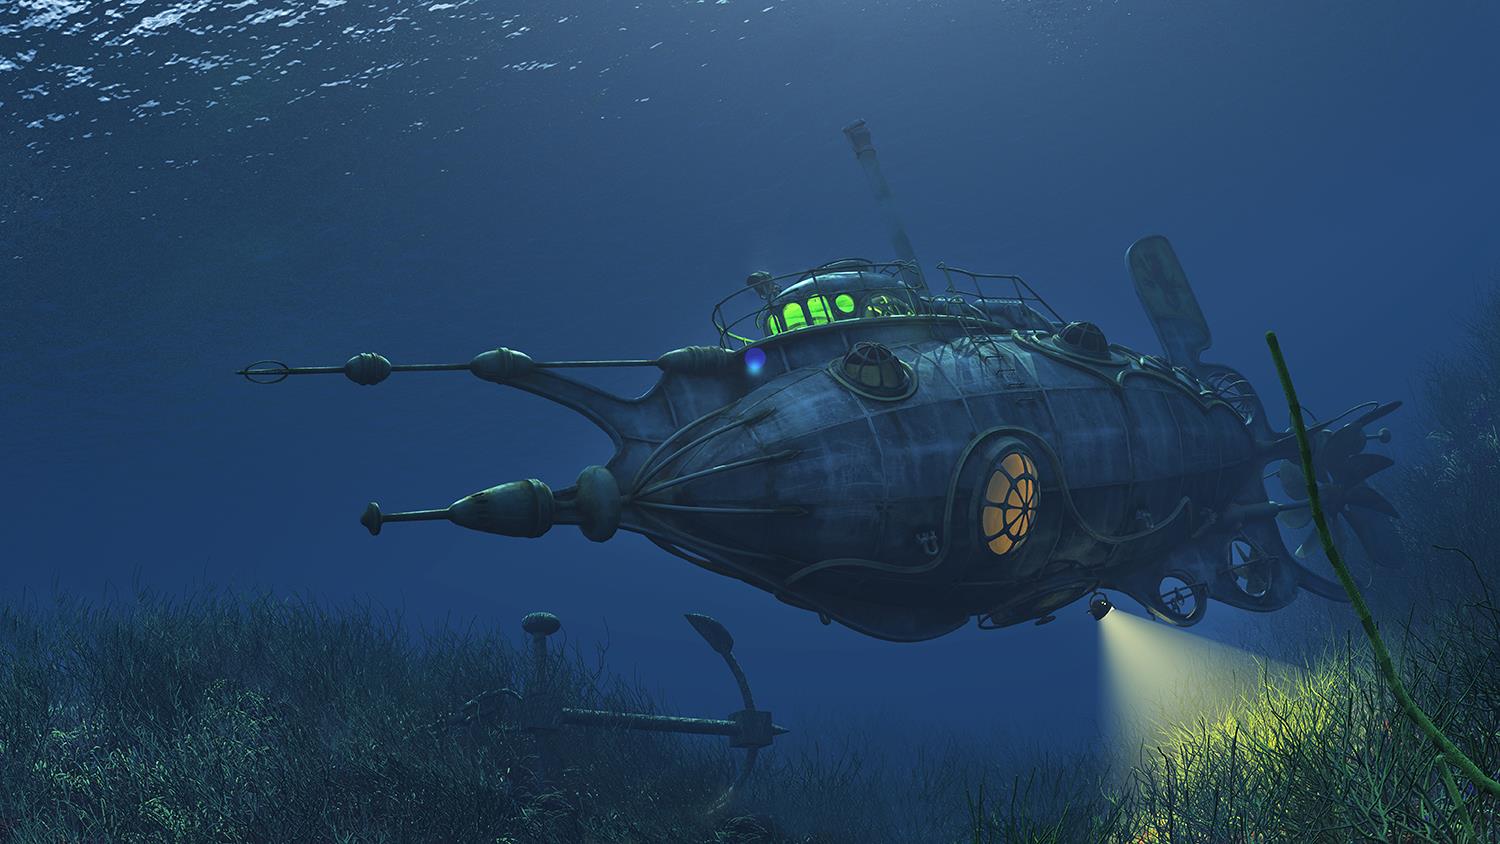 Sottomarino fantascientifico